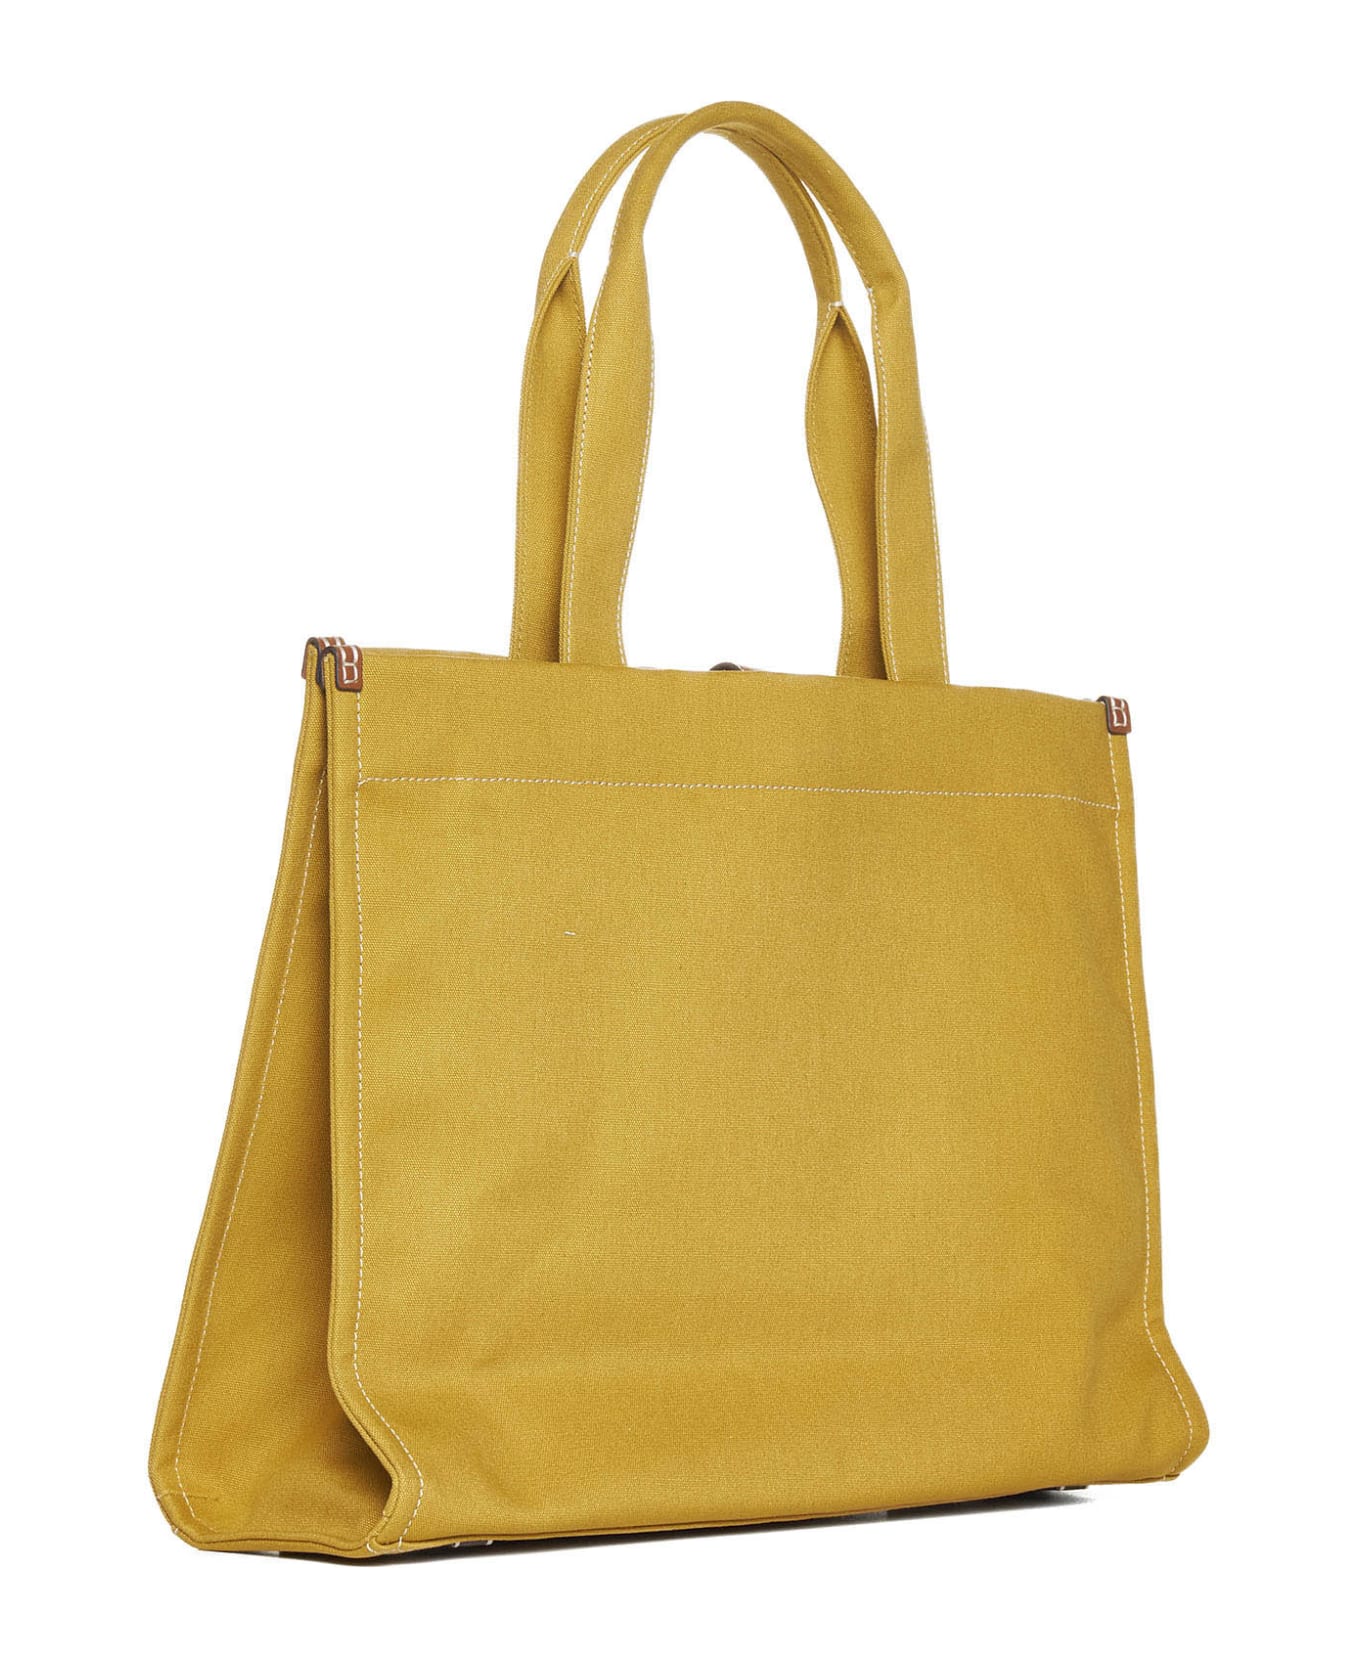 Tory Burch 'ella' Shopping Bag - Canary